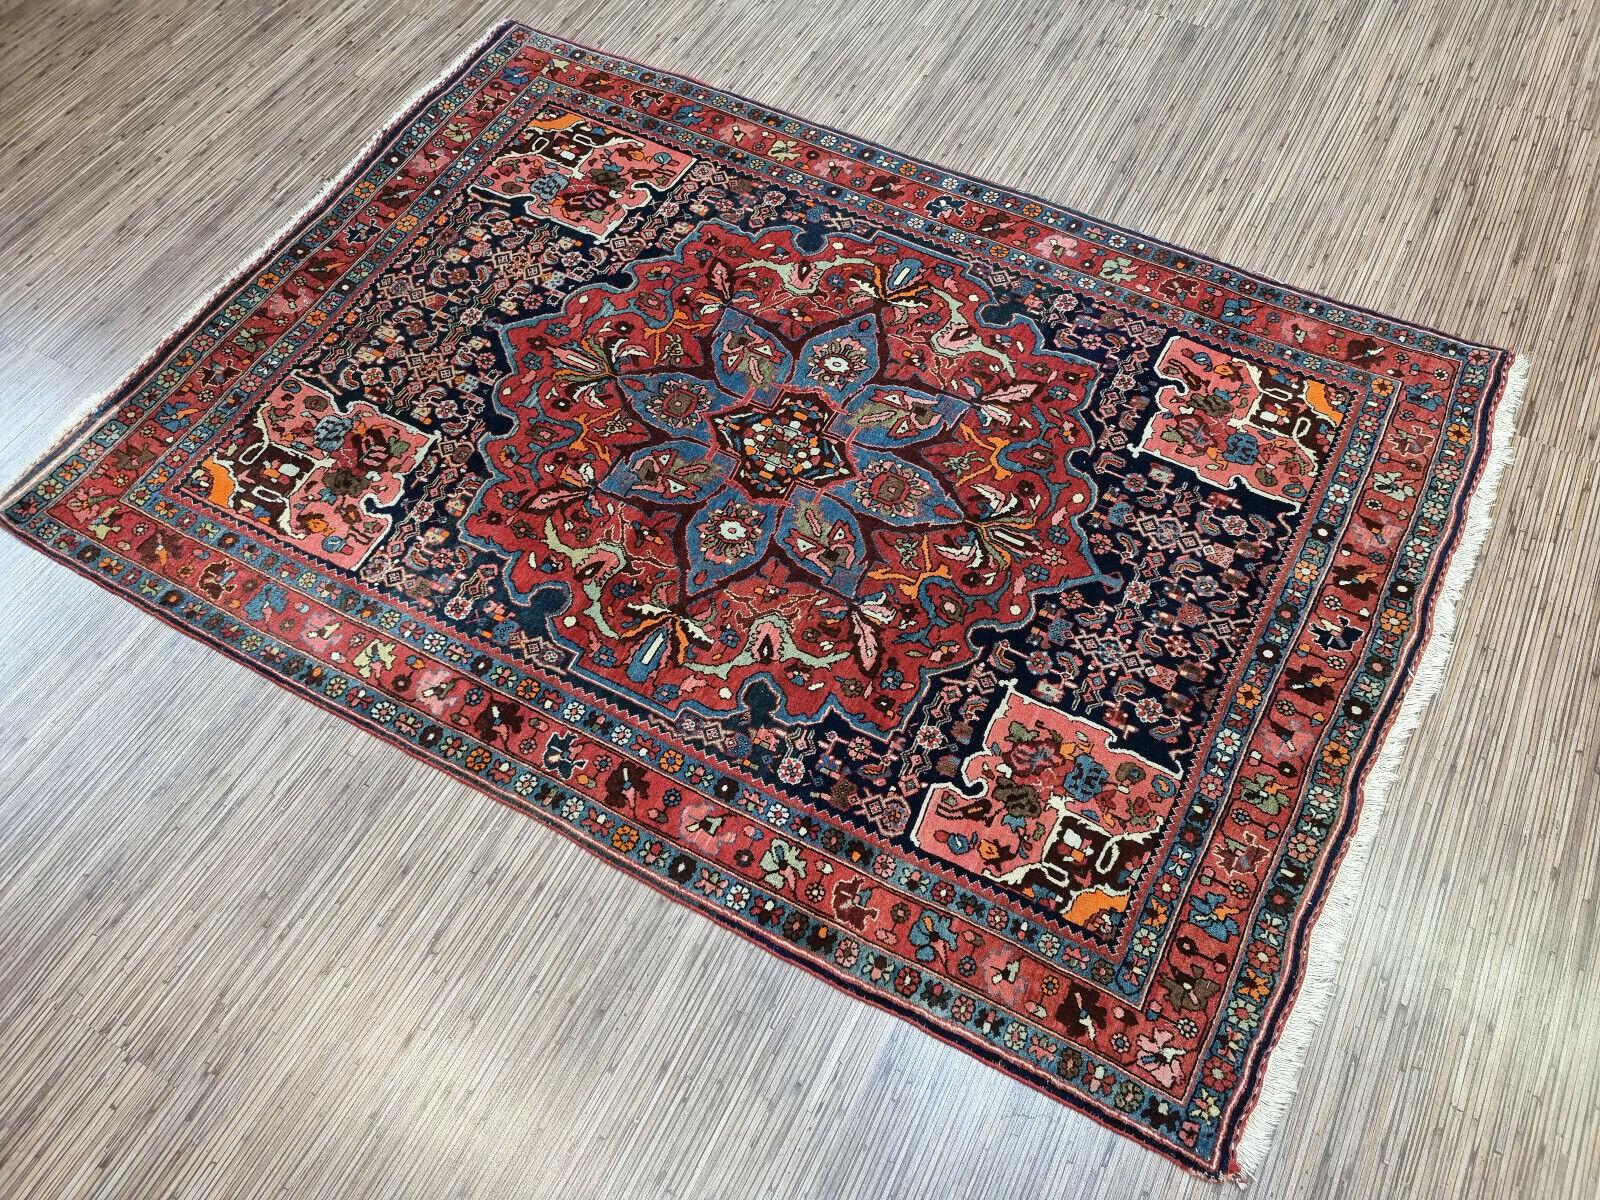 Holen Sie sich mit unserem handgefertigten antiken Bidjar-Teppich im persischen Stil ein Stück Geschichte und Kunst nach Hause. Dieser Teppich wurde in den 1910er Jahren hergestellt und misst 3,8' x 5,3', geeignet für kleine bis mittlere Räume.

Der